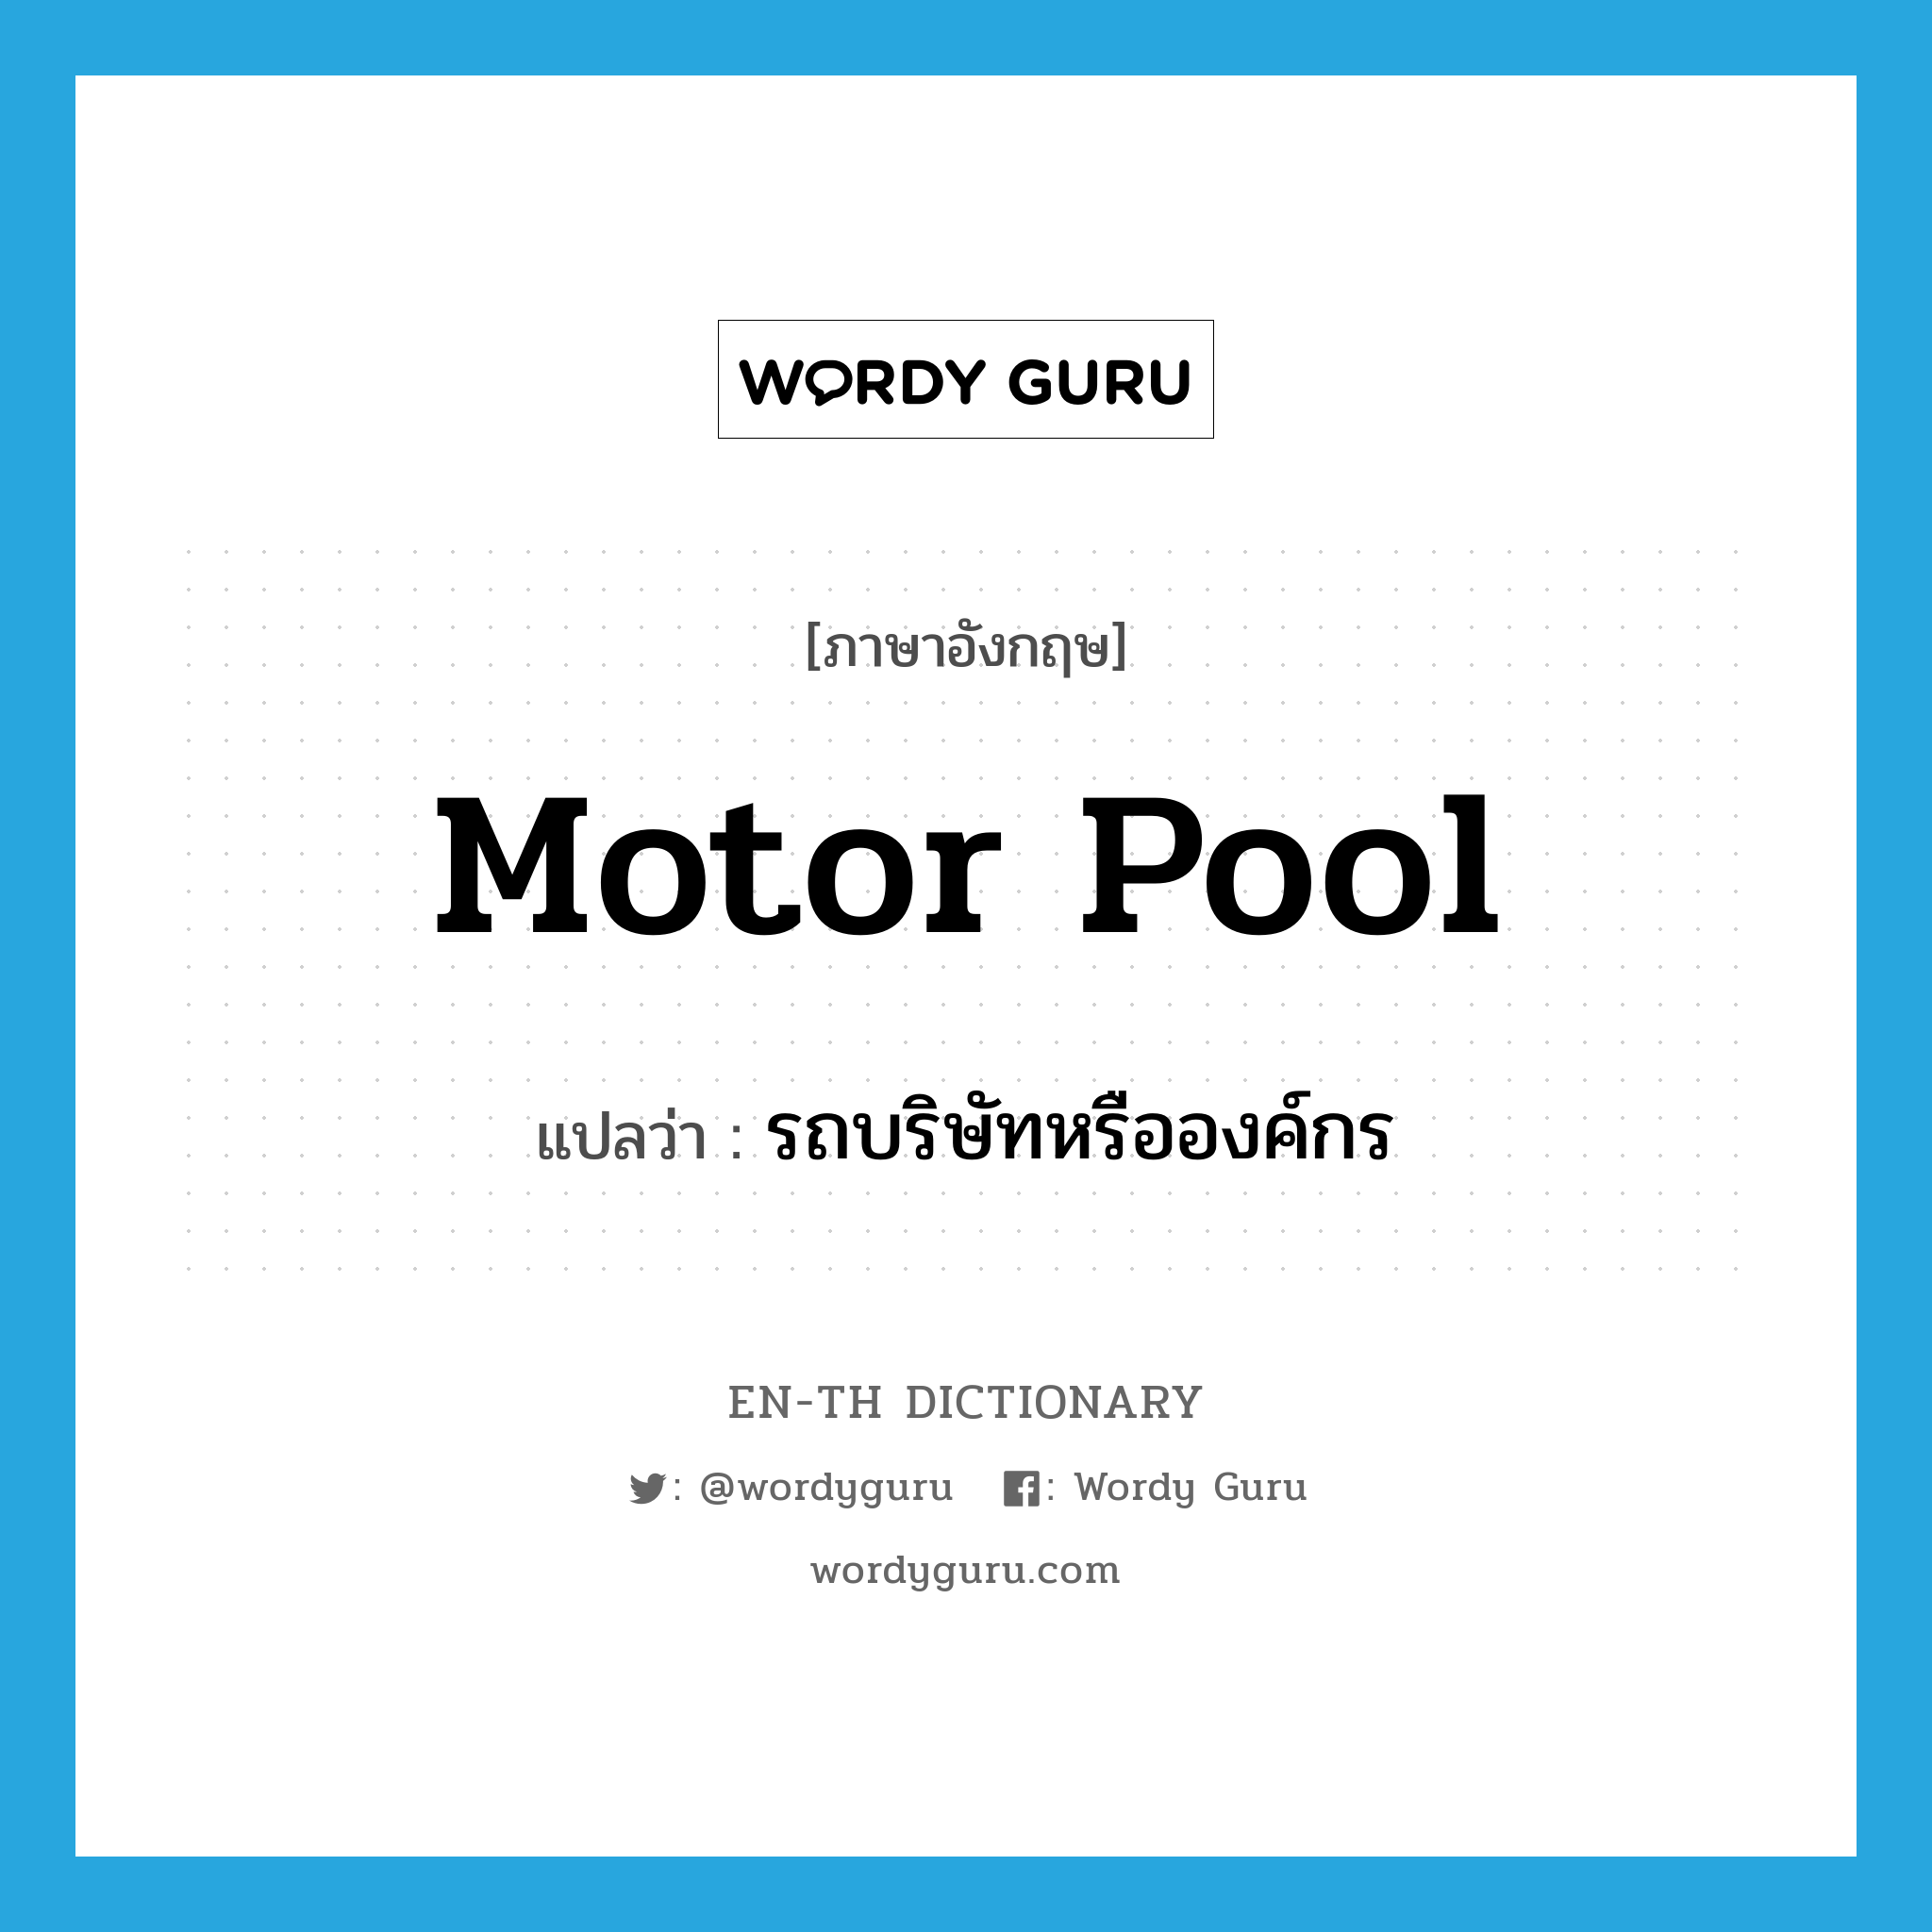 motor pool แปลว่า?, คำศัพท์ภาษาอังกฤษ motor pool แปลว่า รถบริษัทหรือองค์กร ประเภท N หมวด N